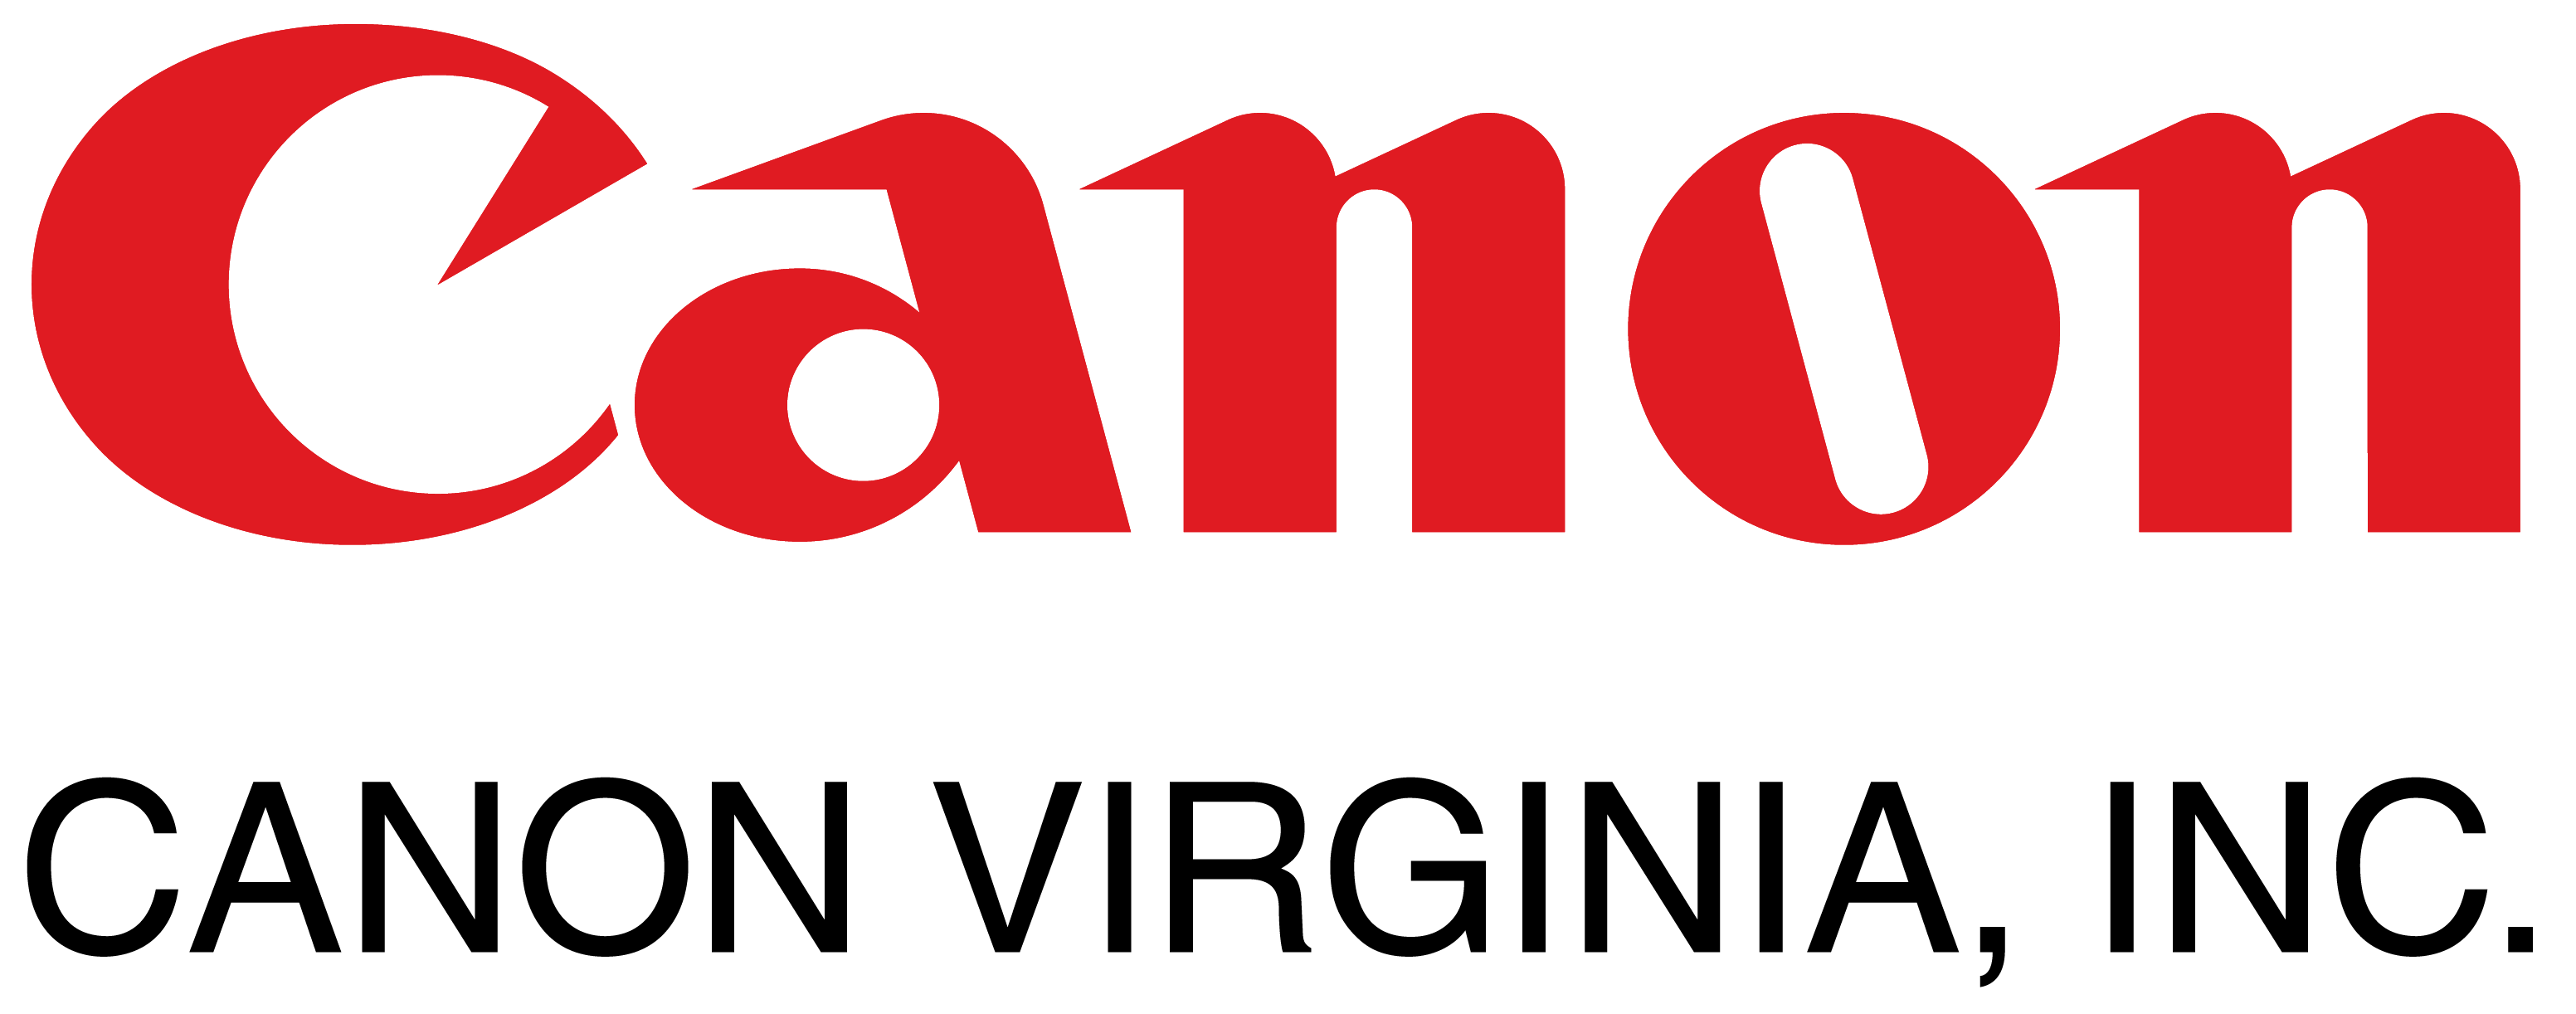 Canon Virginia, Inc. + Logo